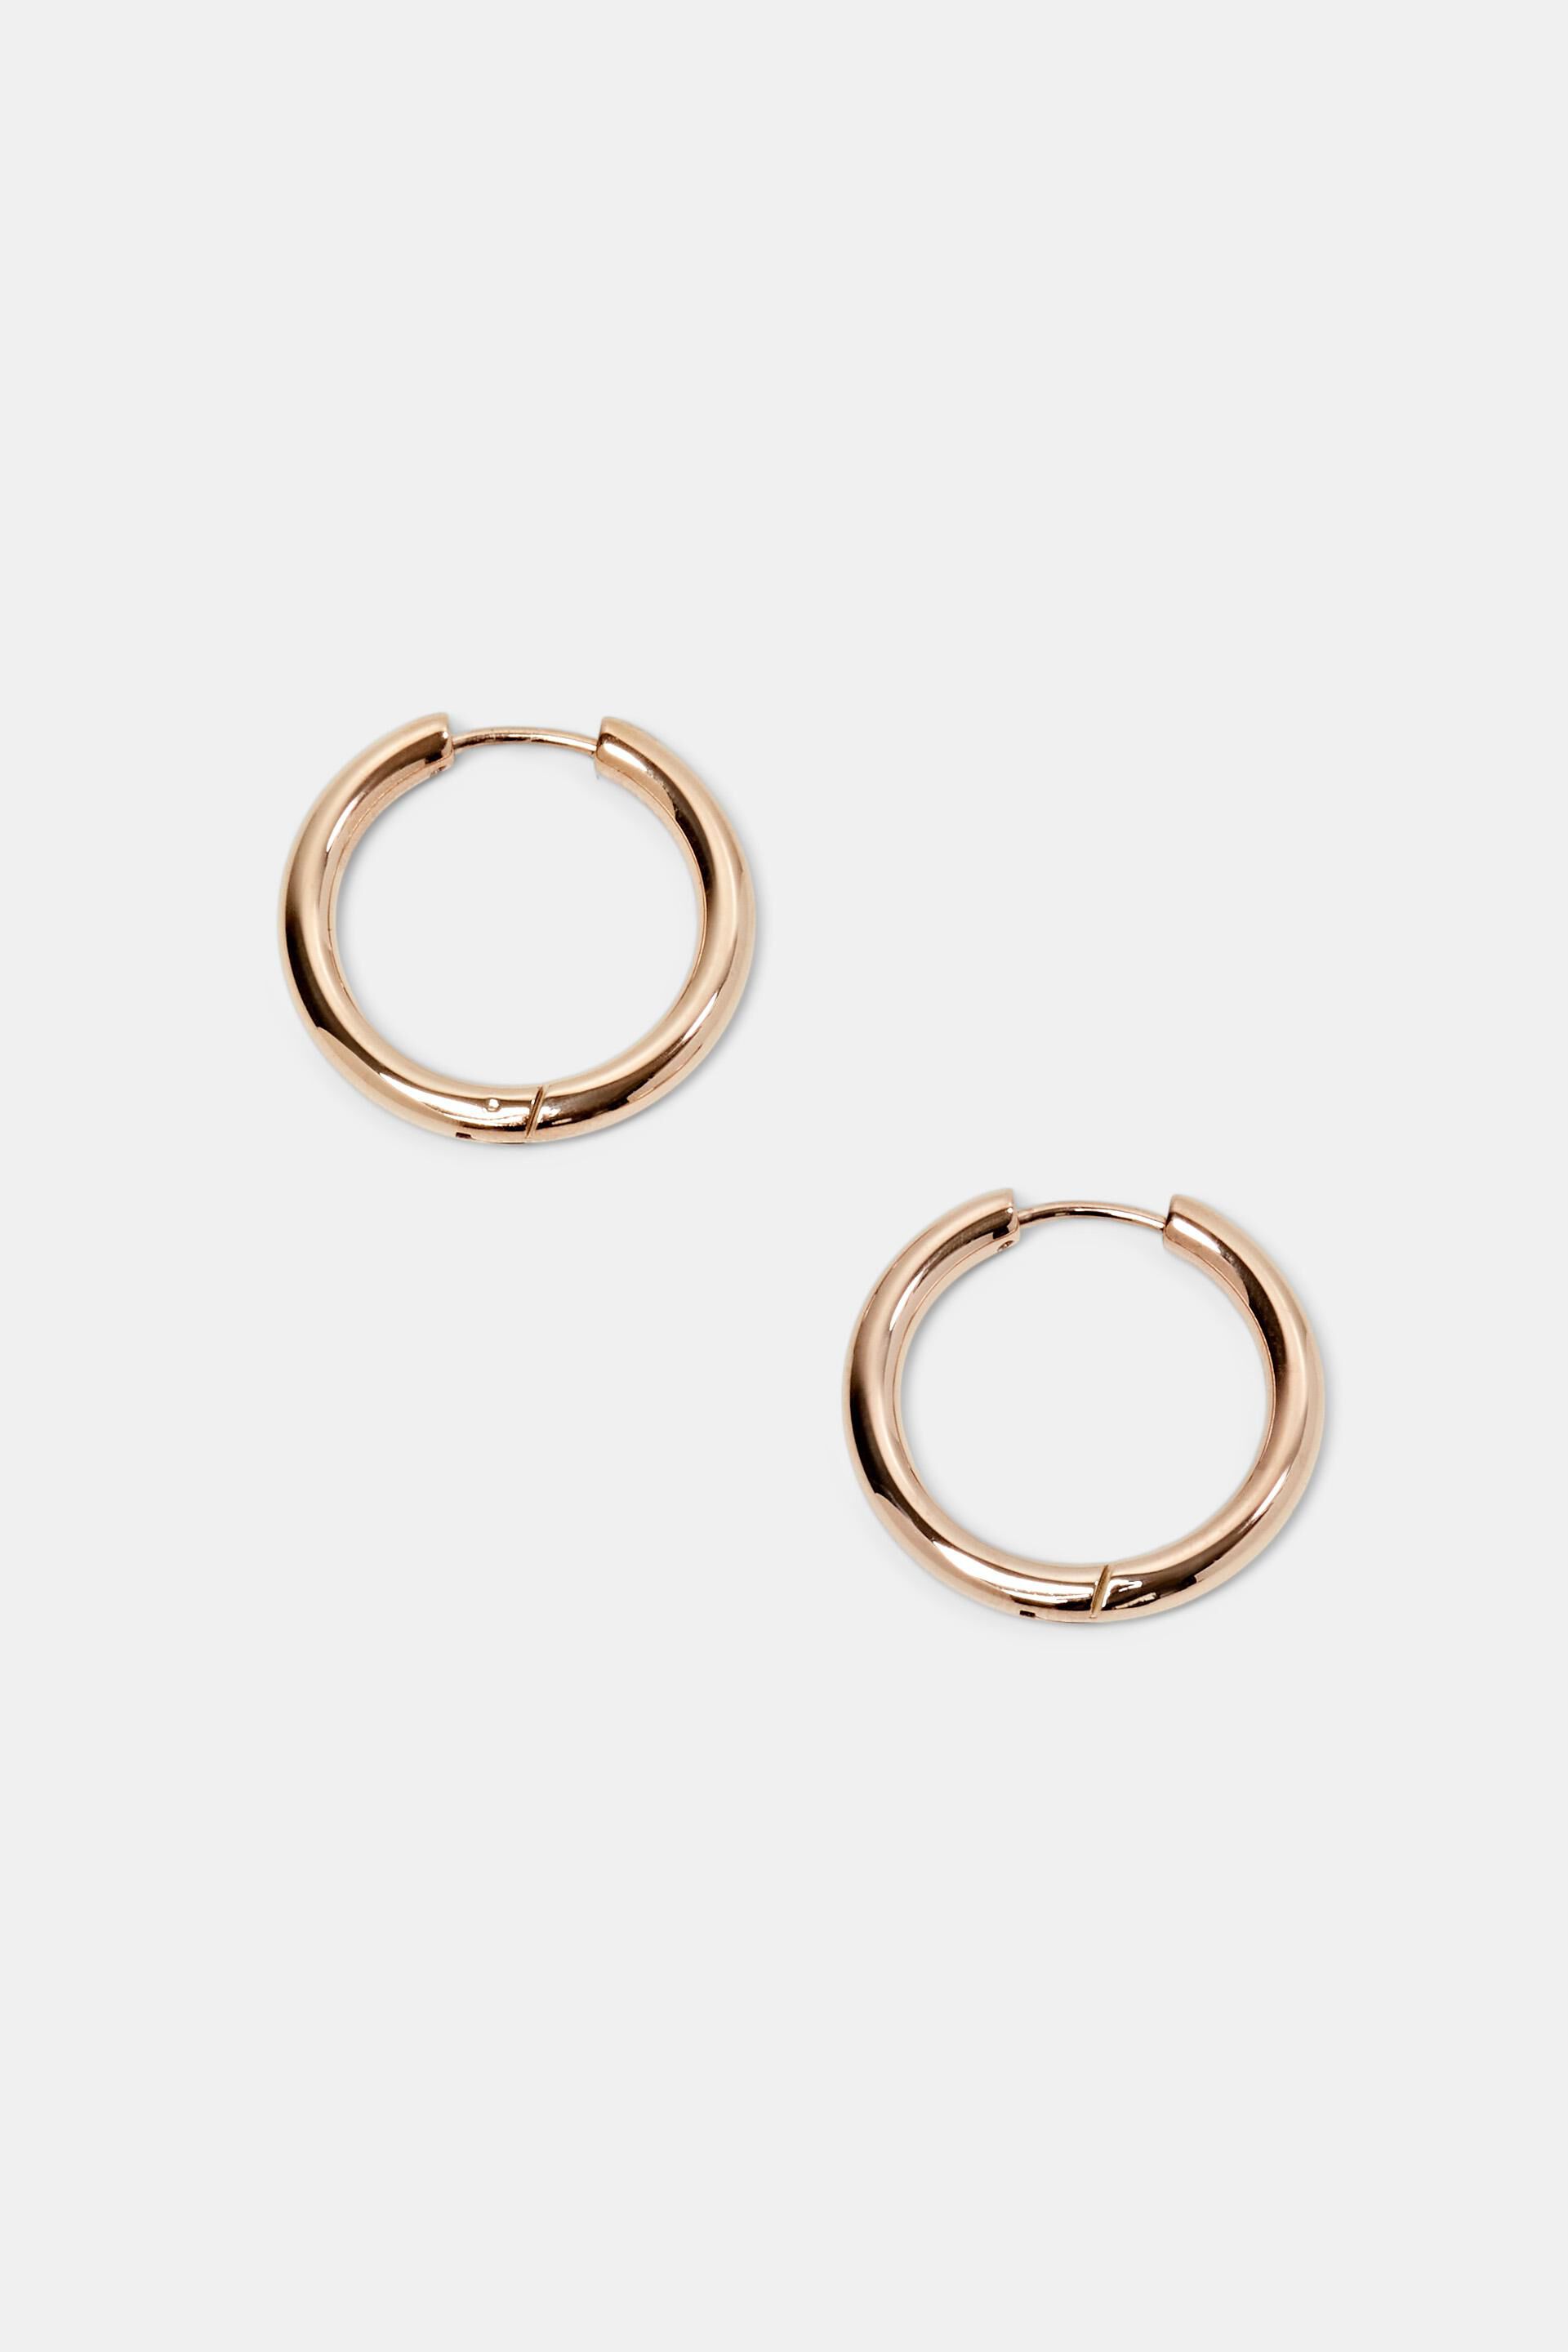 Esprit stainless steel Small hoop earrings,